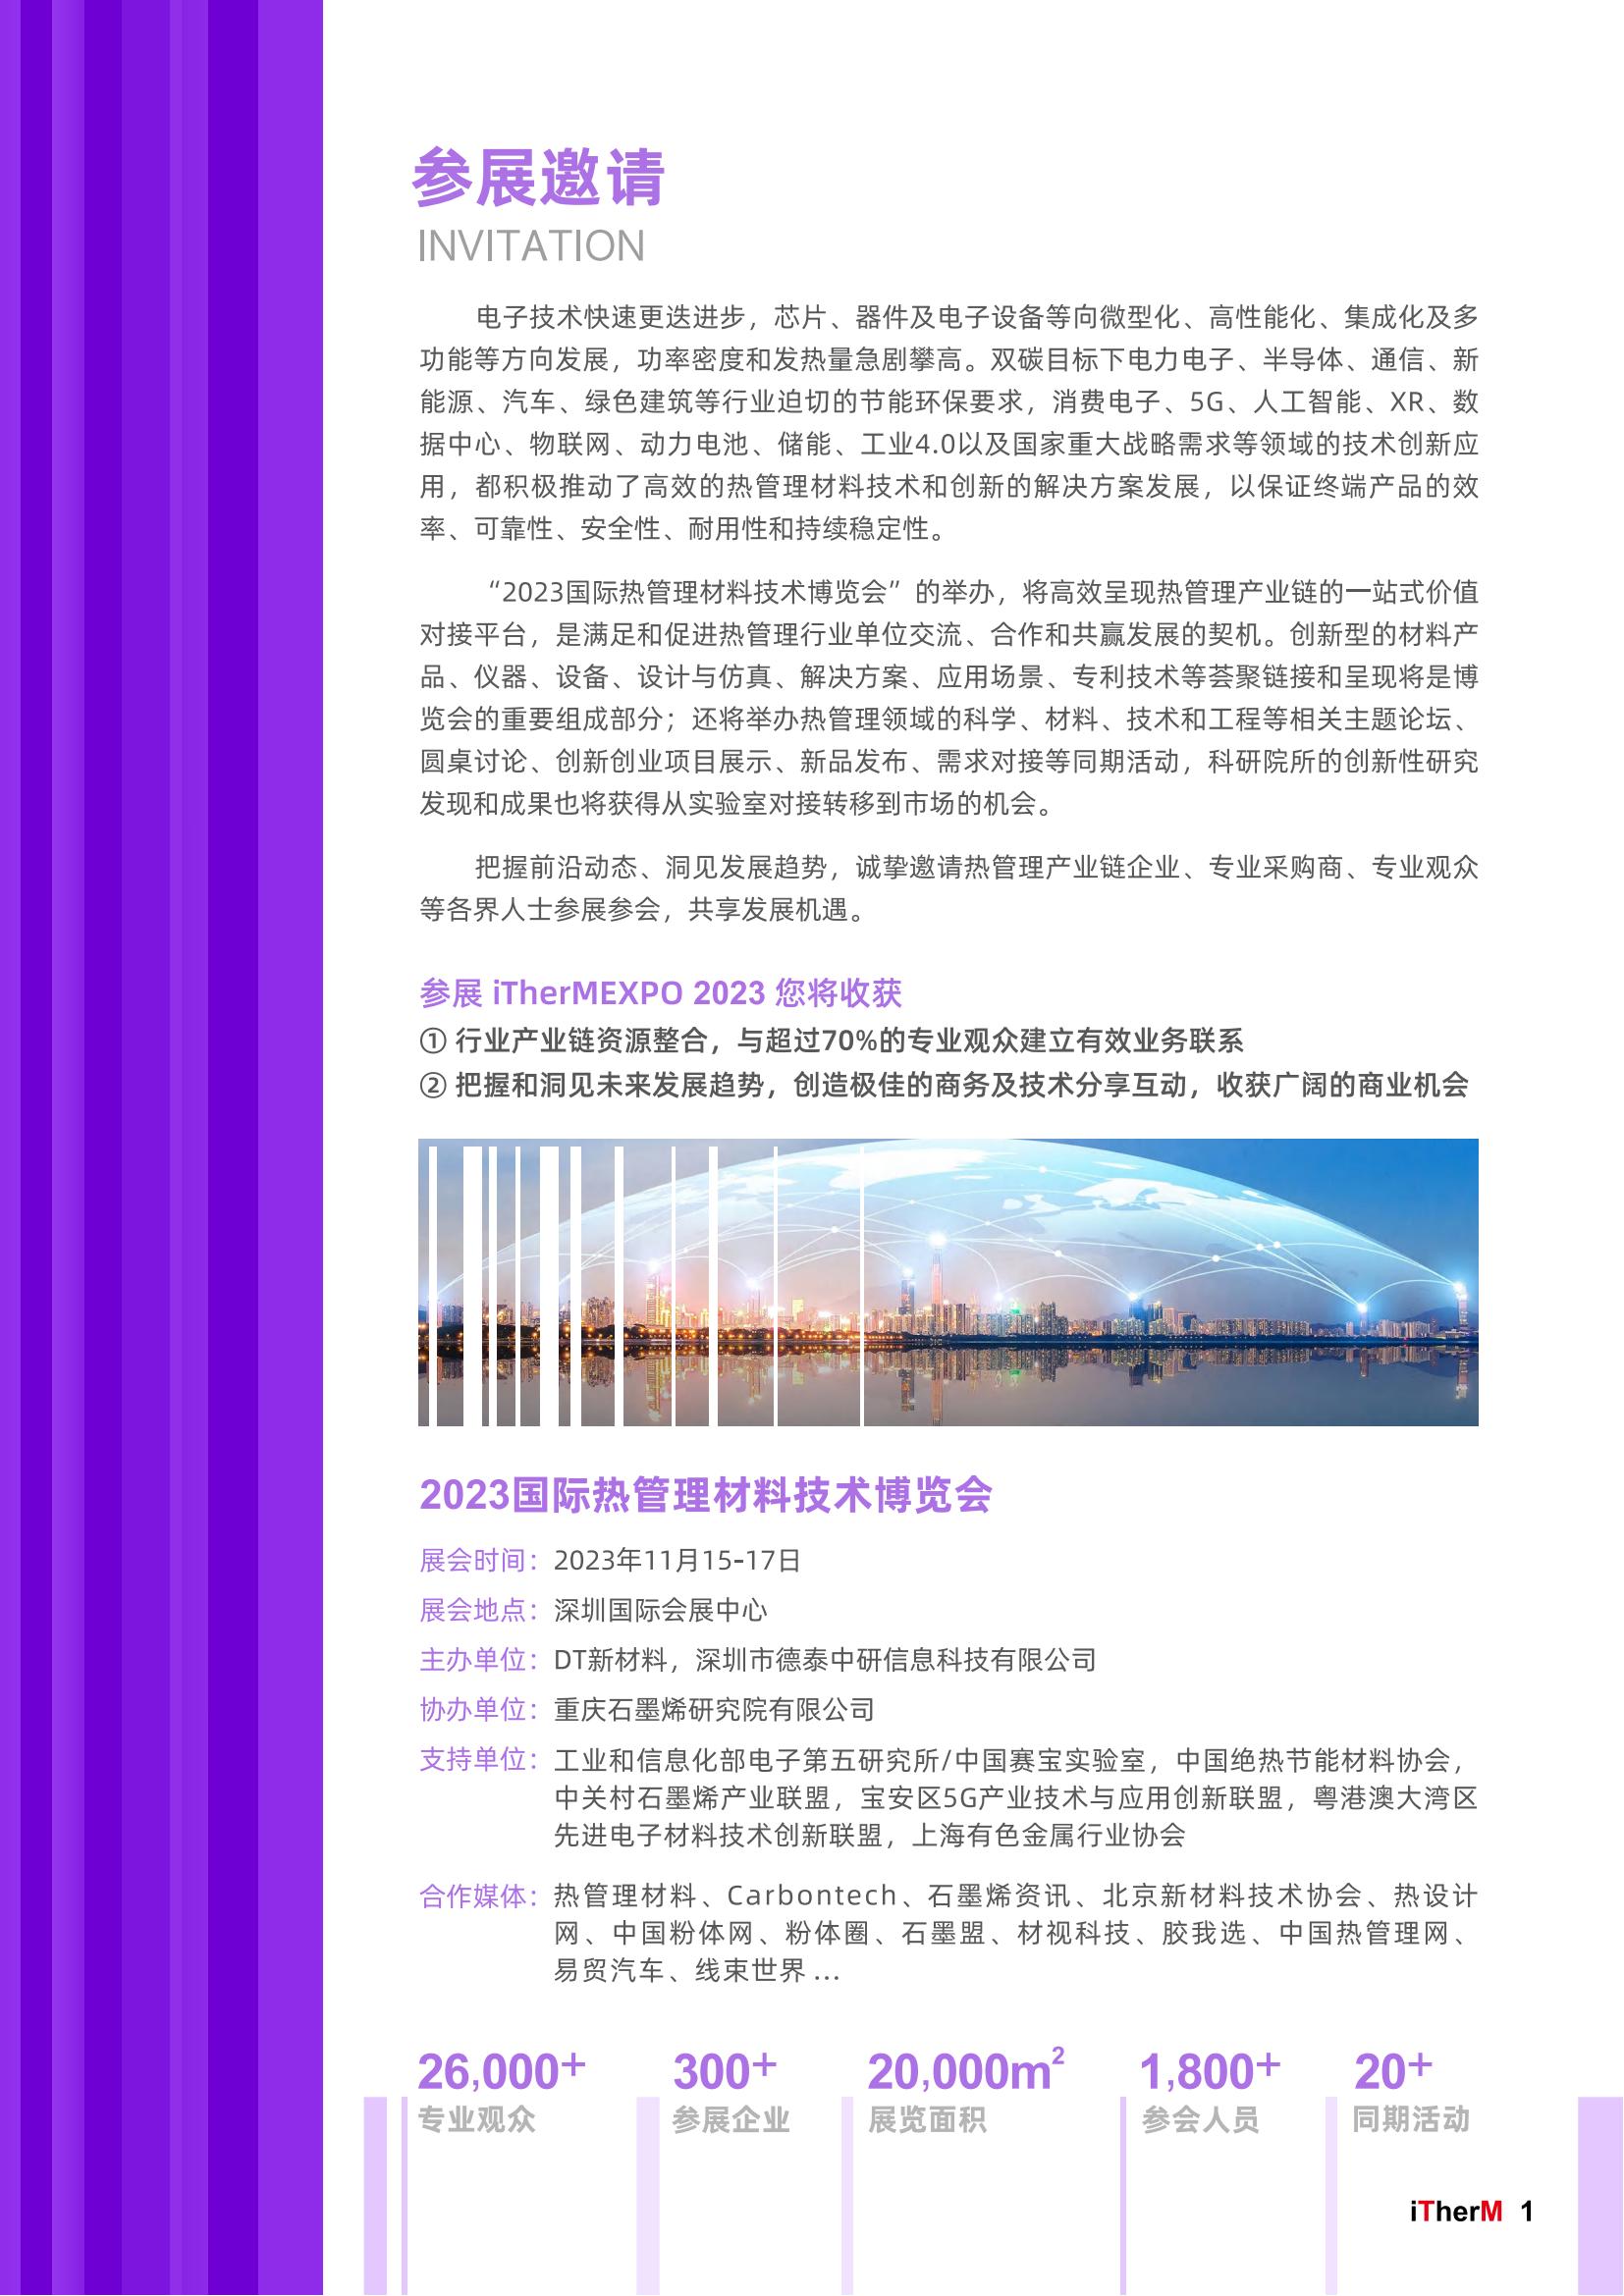 5-招展手册iTherMEXPO国际热博会2023_01.jpg